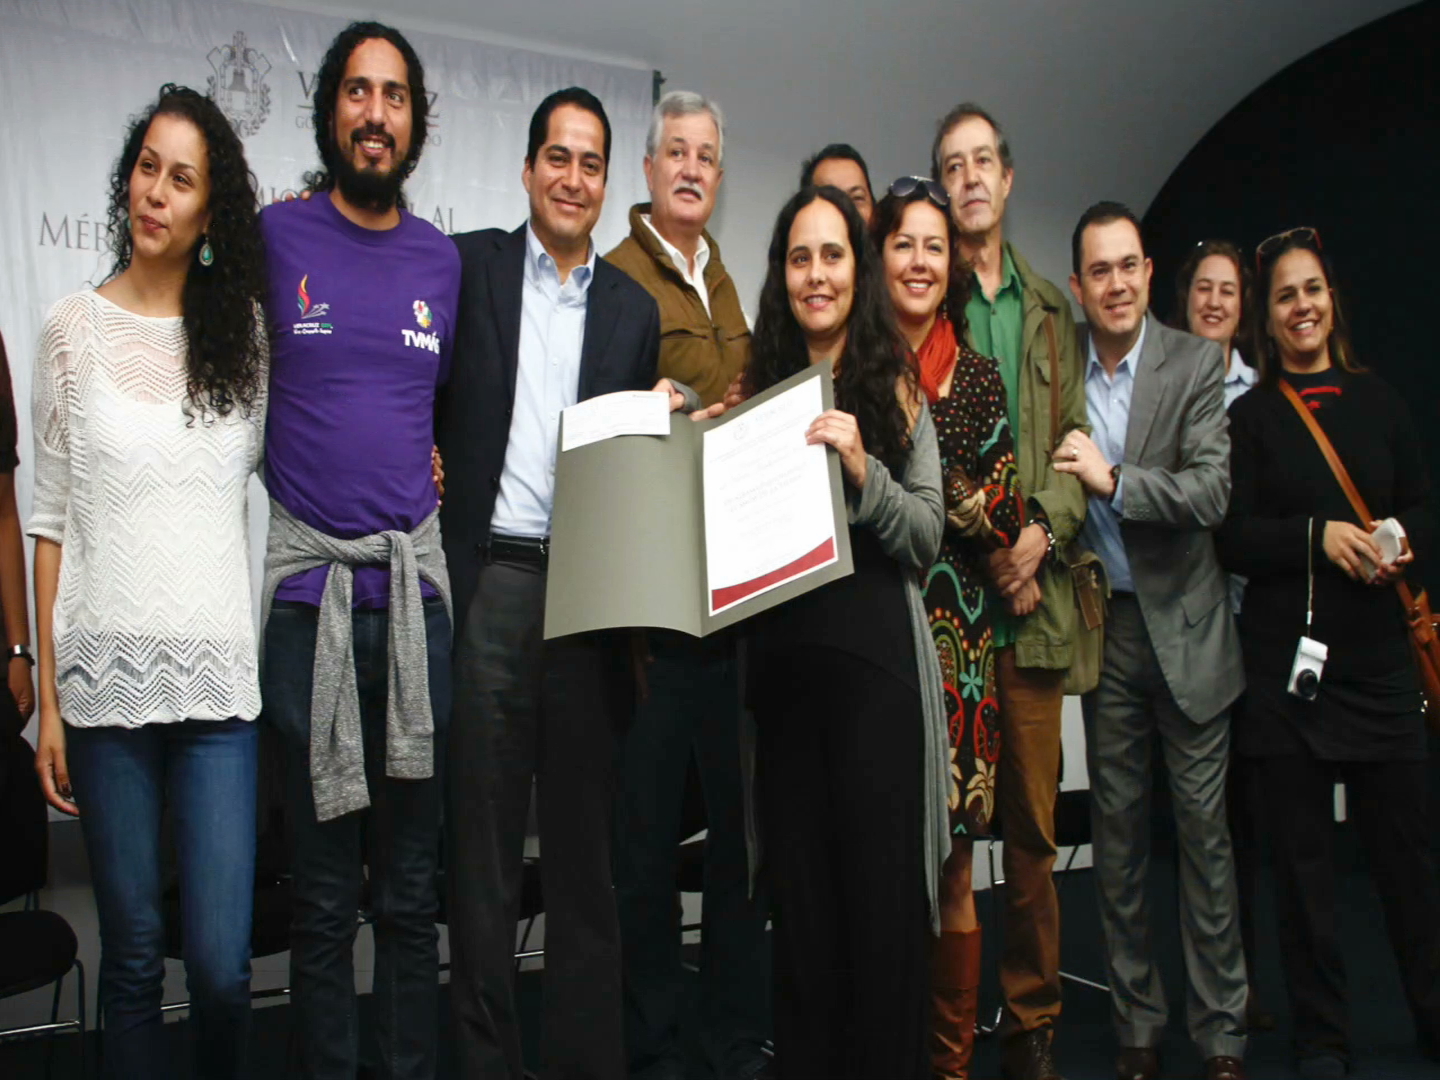 El show de la tierra”, de Radiomás, recibió el Premio al Mérito Ambiental 2016